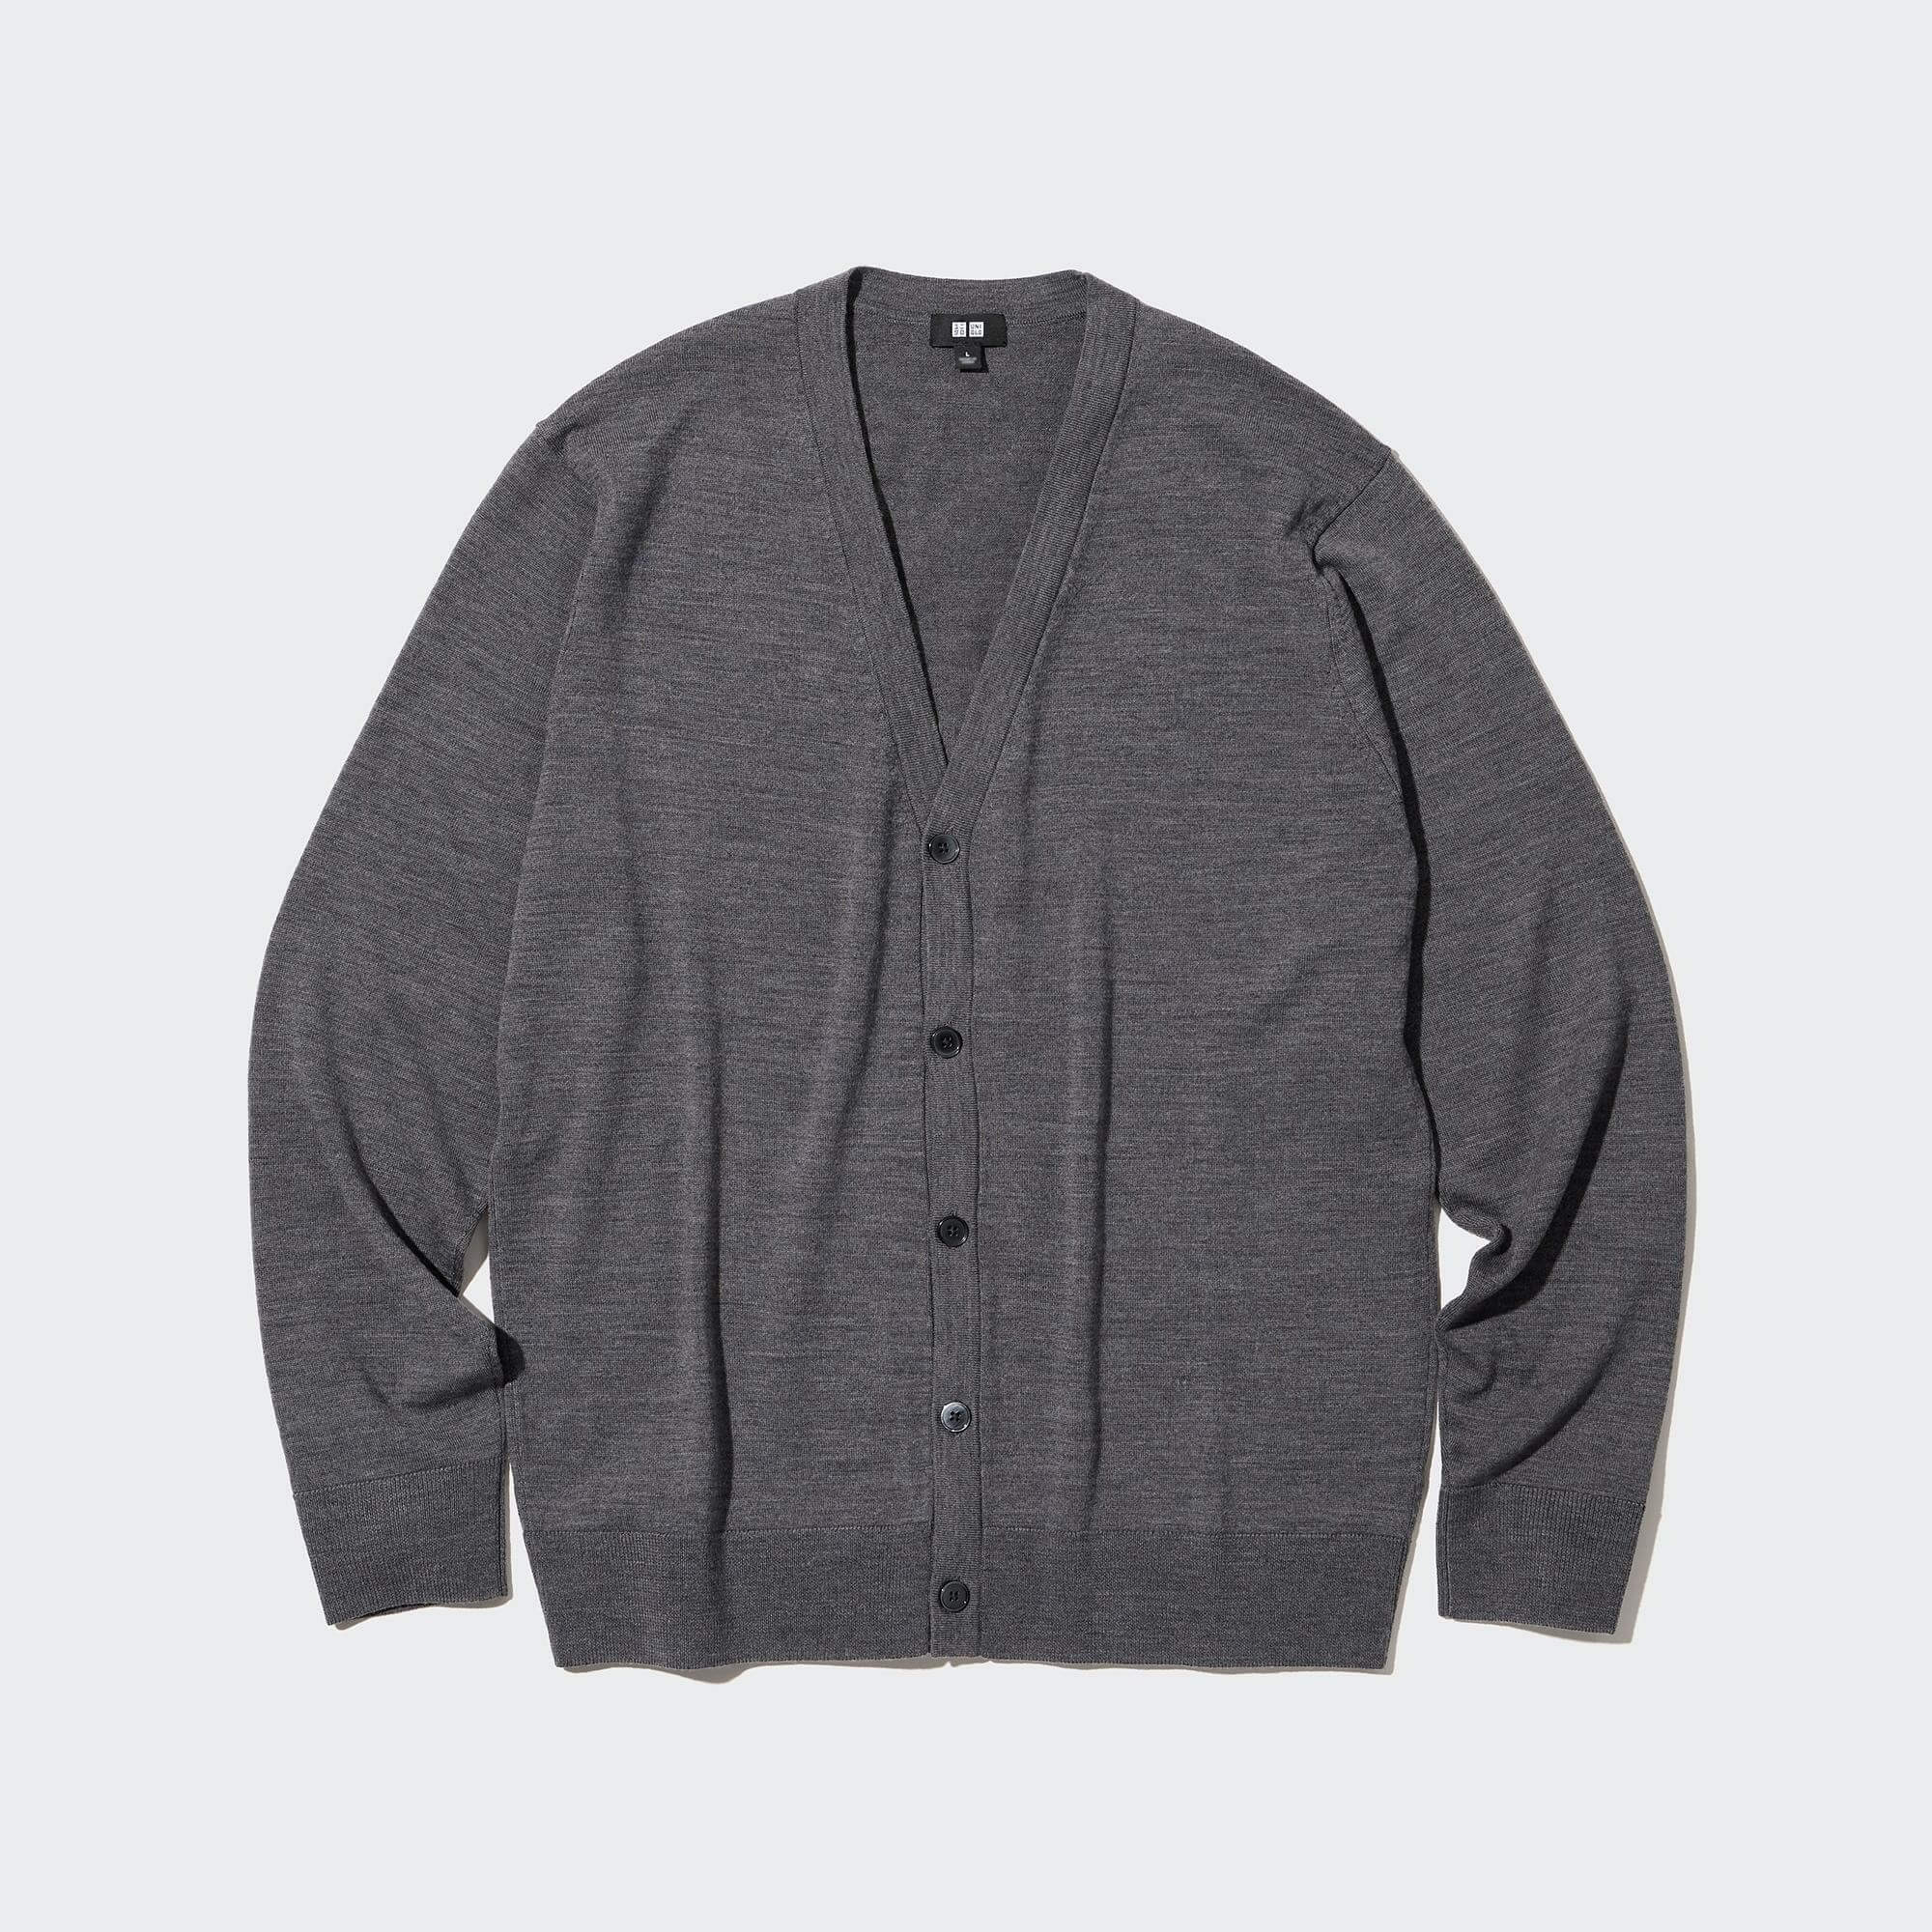 Кардиган Uniqlo Extra Fine Merino, серый рубашка поло uniqlo 100% extra fine merino knit long sleeved серый